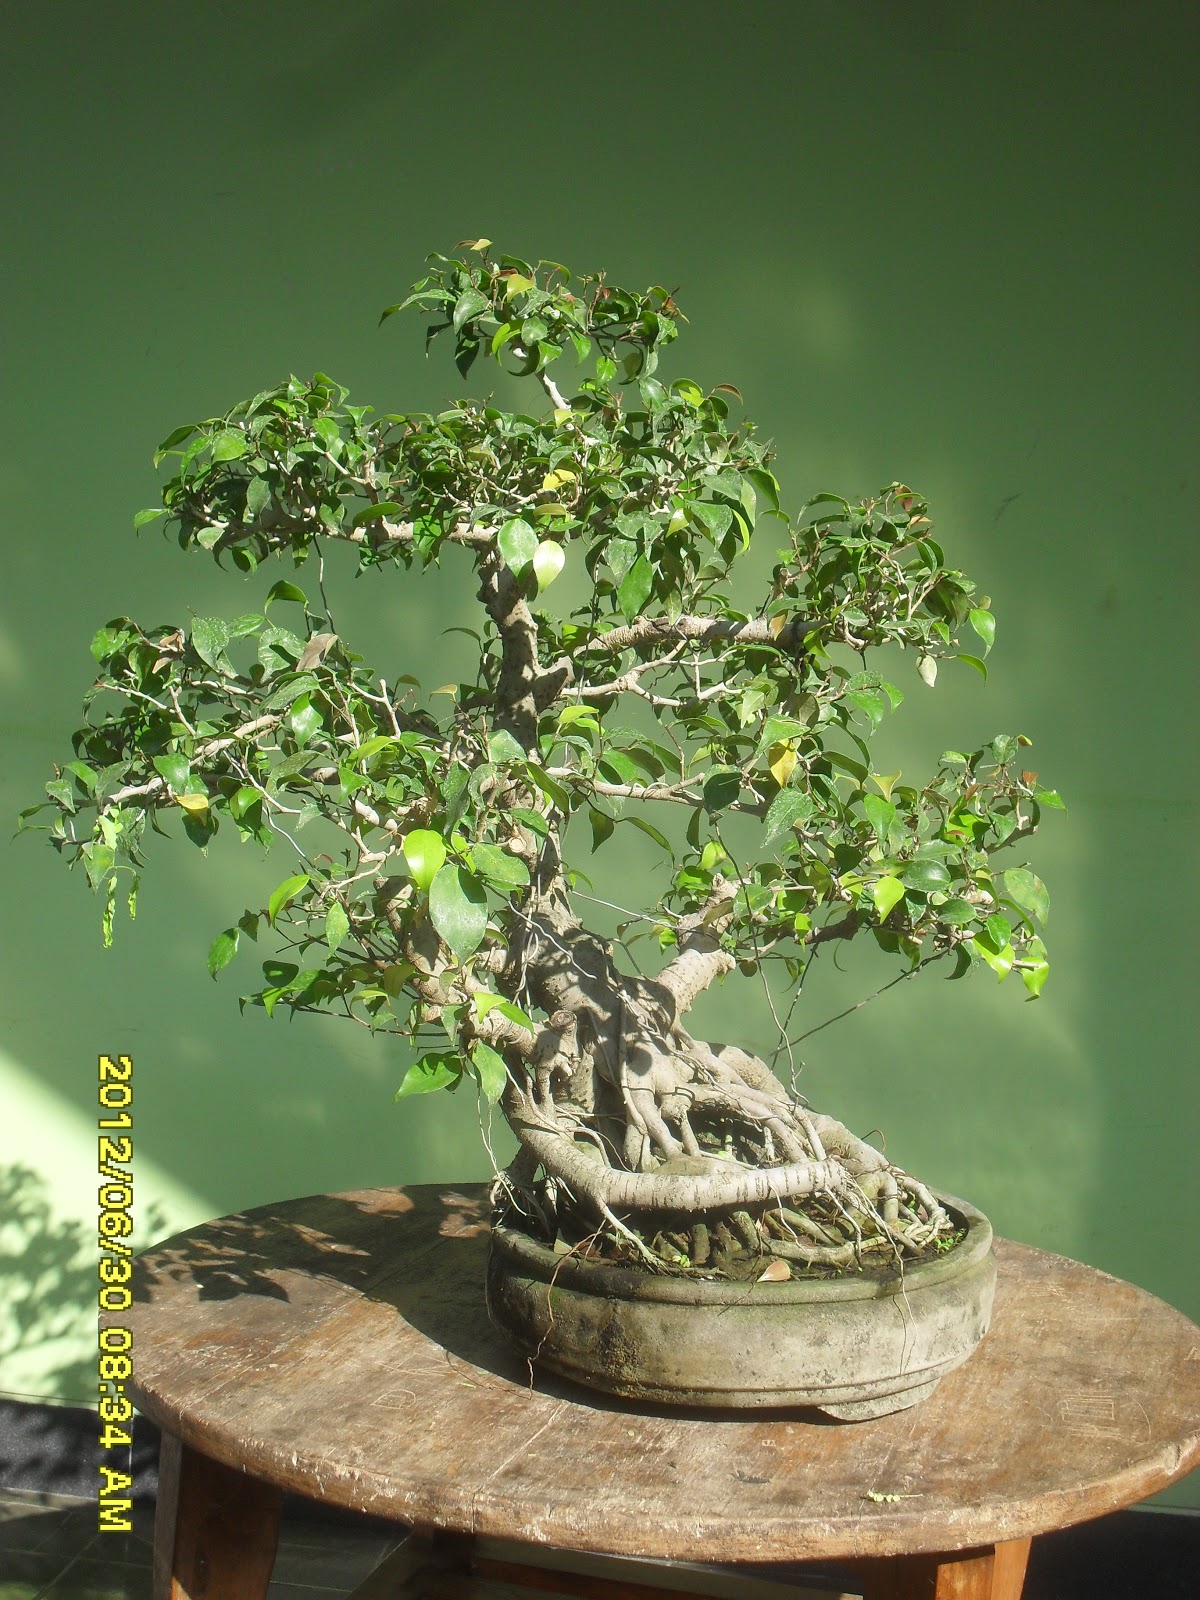 Kumpulan Artikel Tentang Bonsai  kumpulan gambar bonsai 